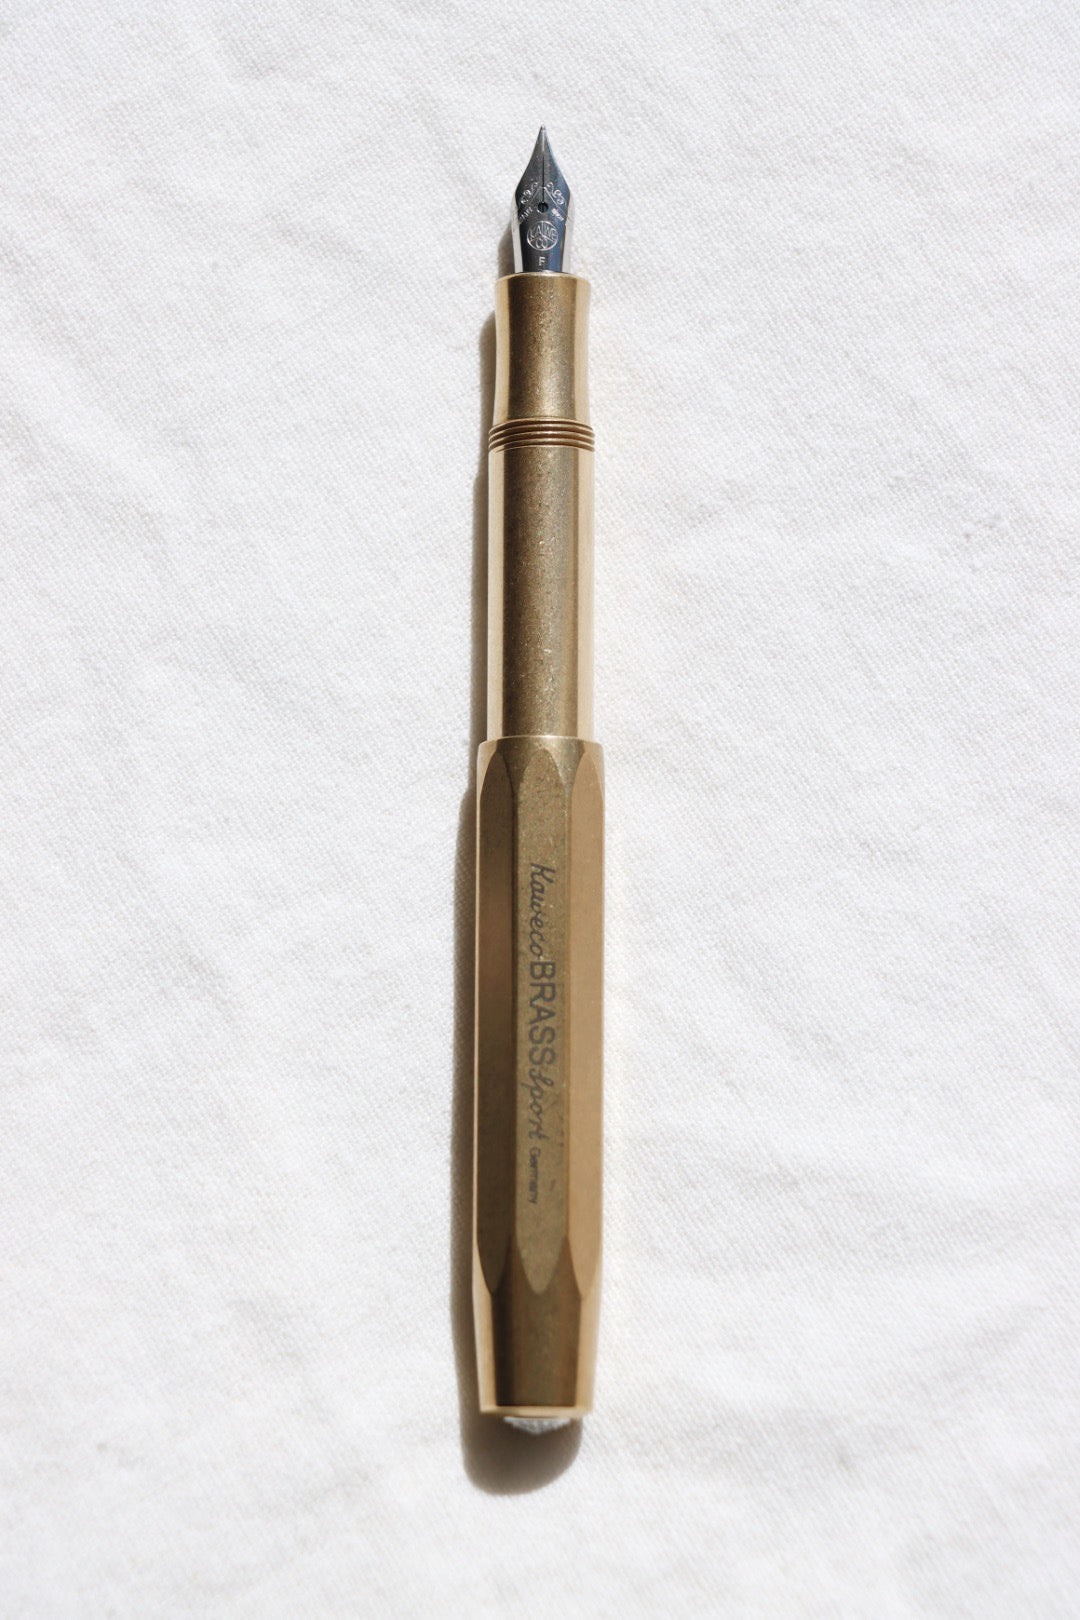 Kaweco Sport Fountain Pen, Raw Brass